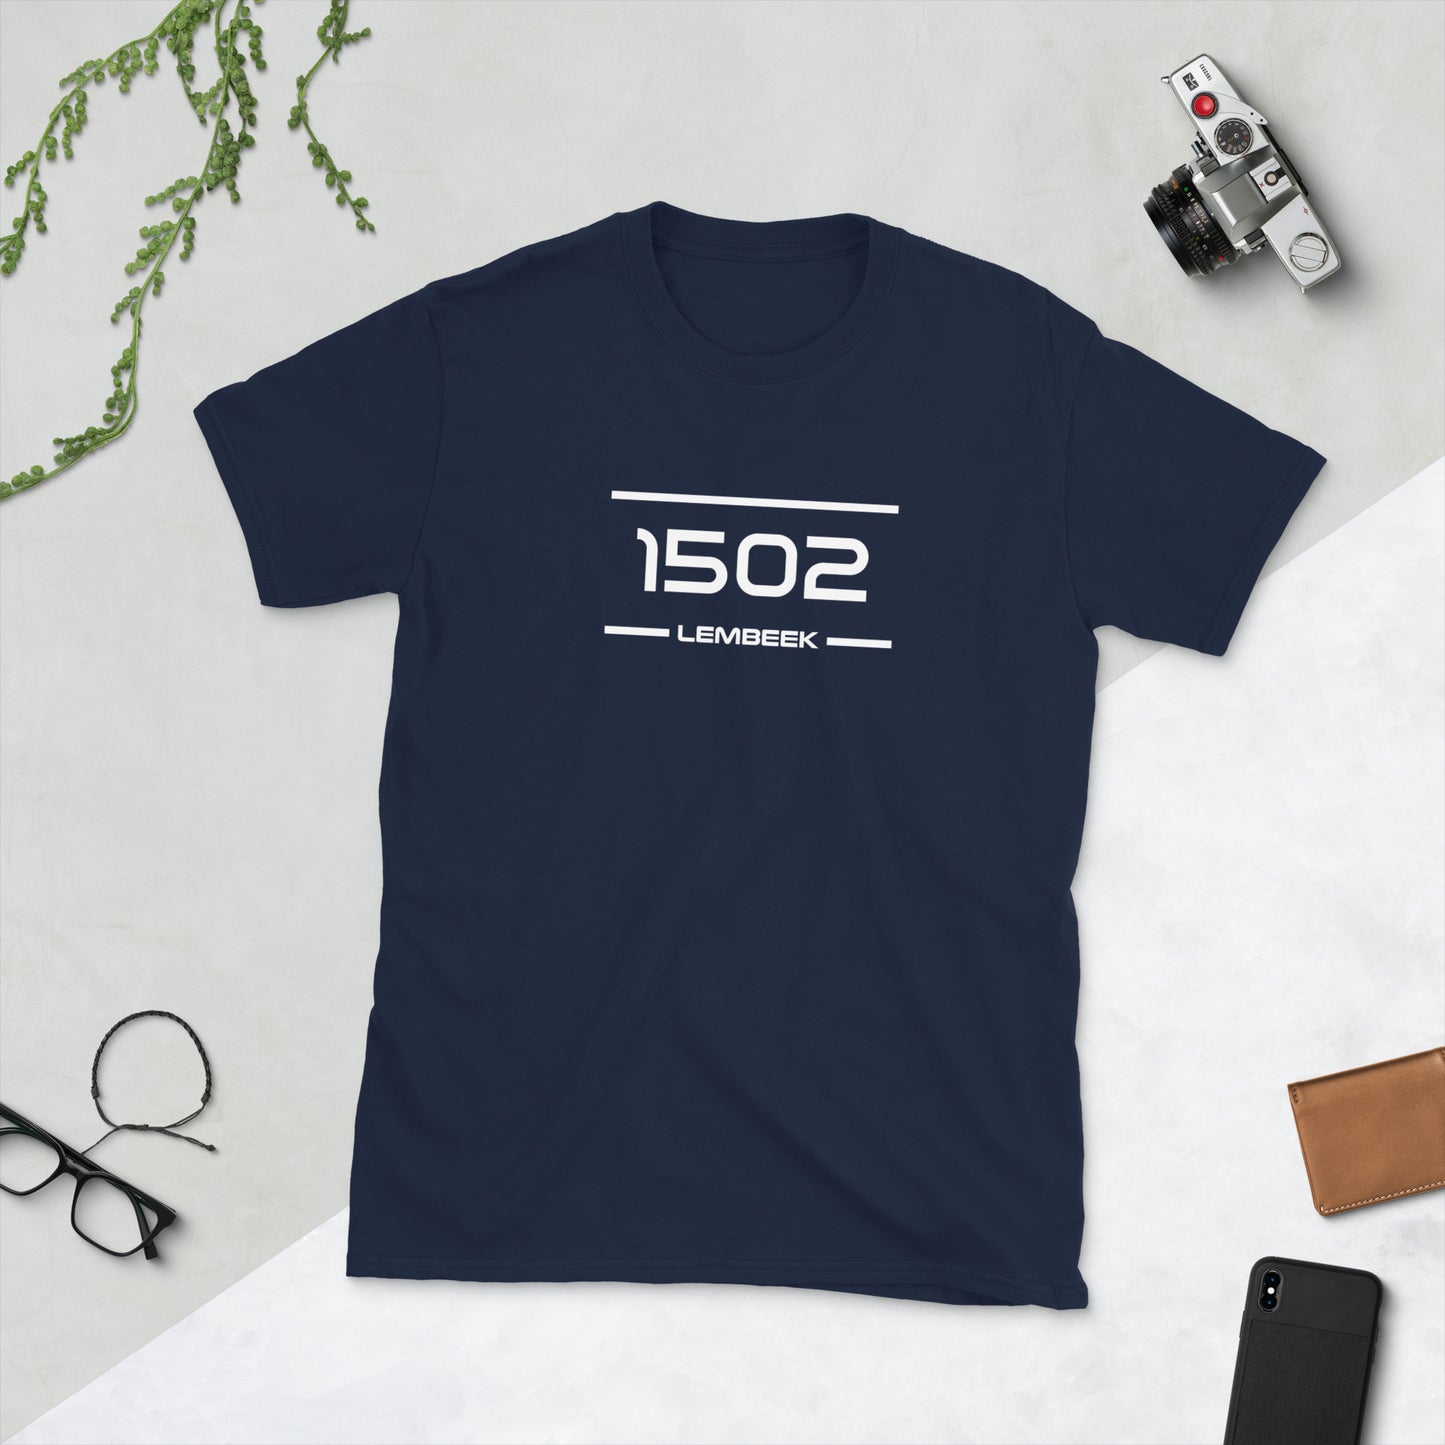 Tshirt - 1502 - Lembeek